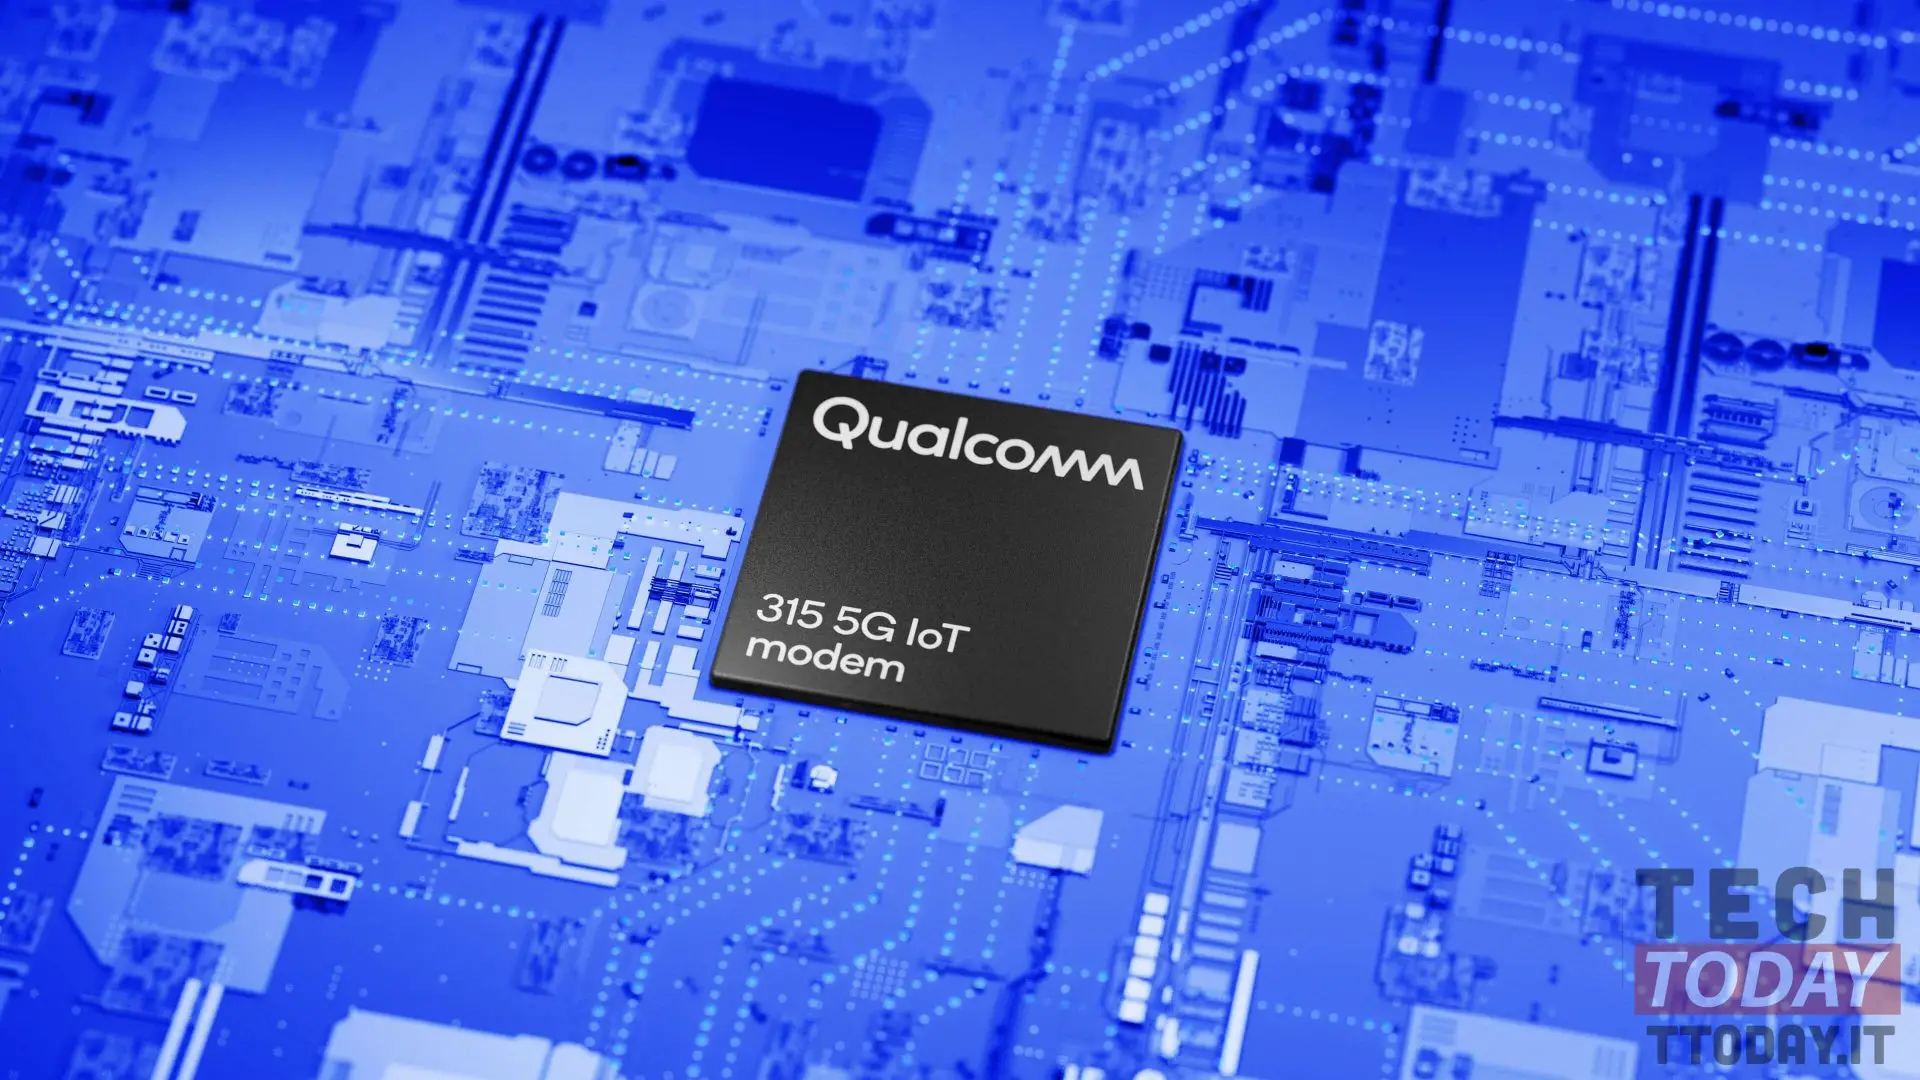 Qualcomm 315 er 5G-modemet som er optimalisert for IoT-enheter